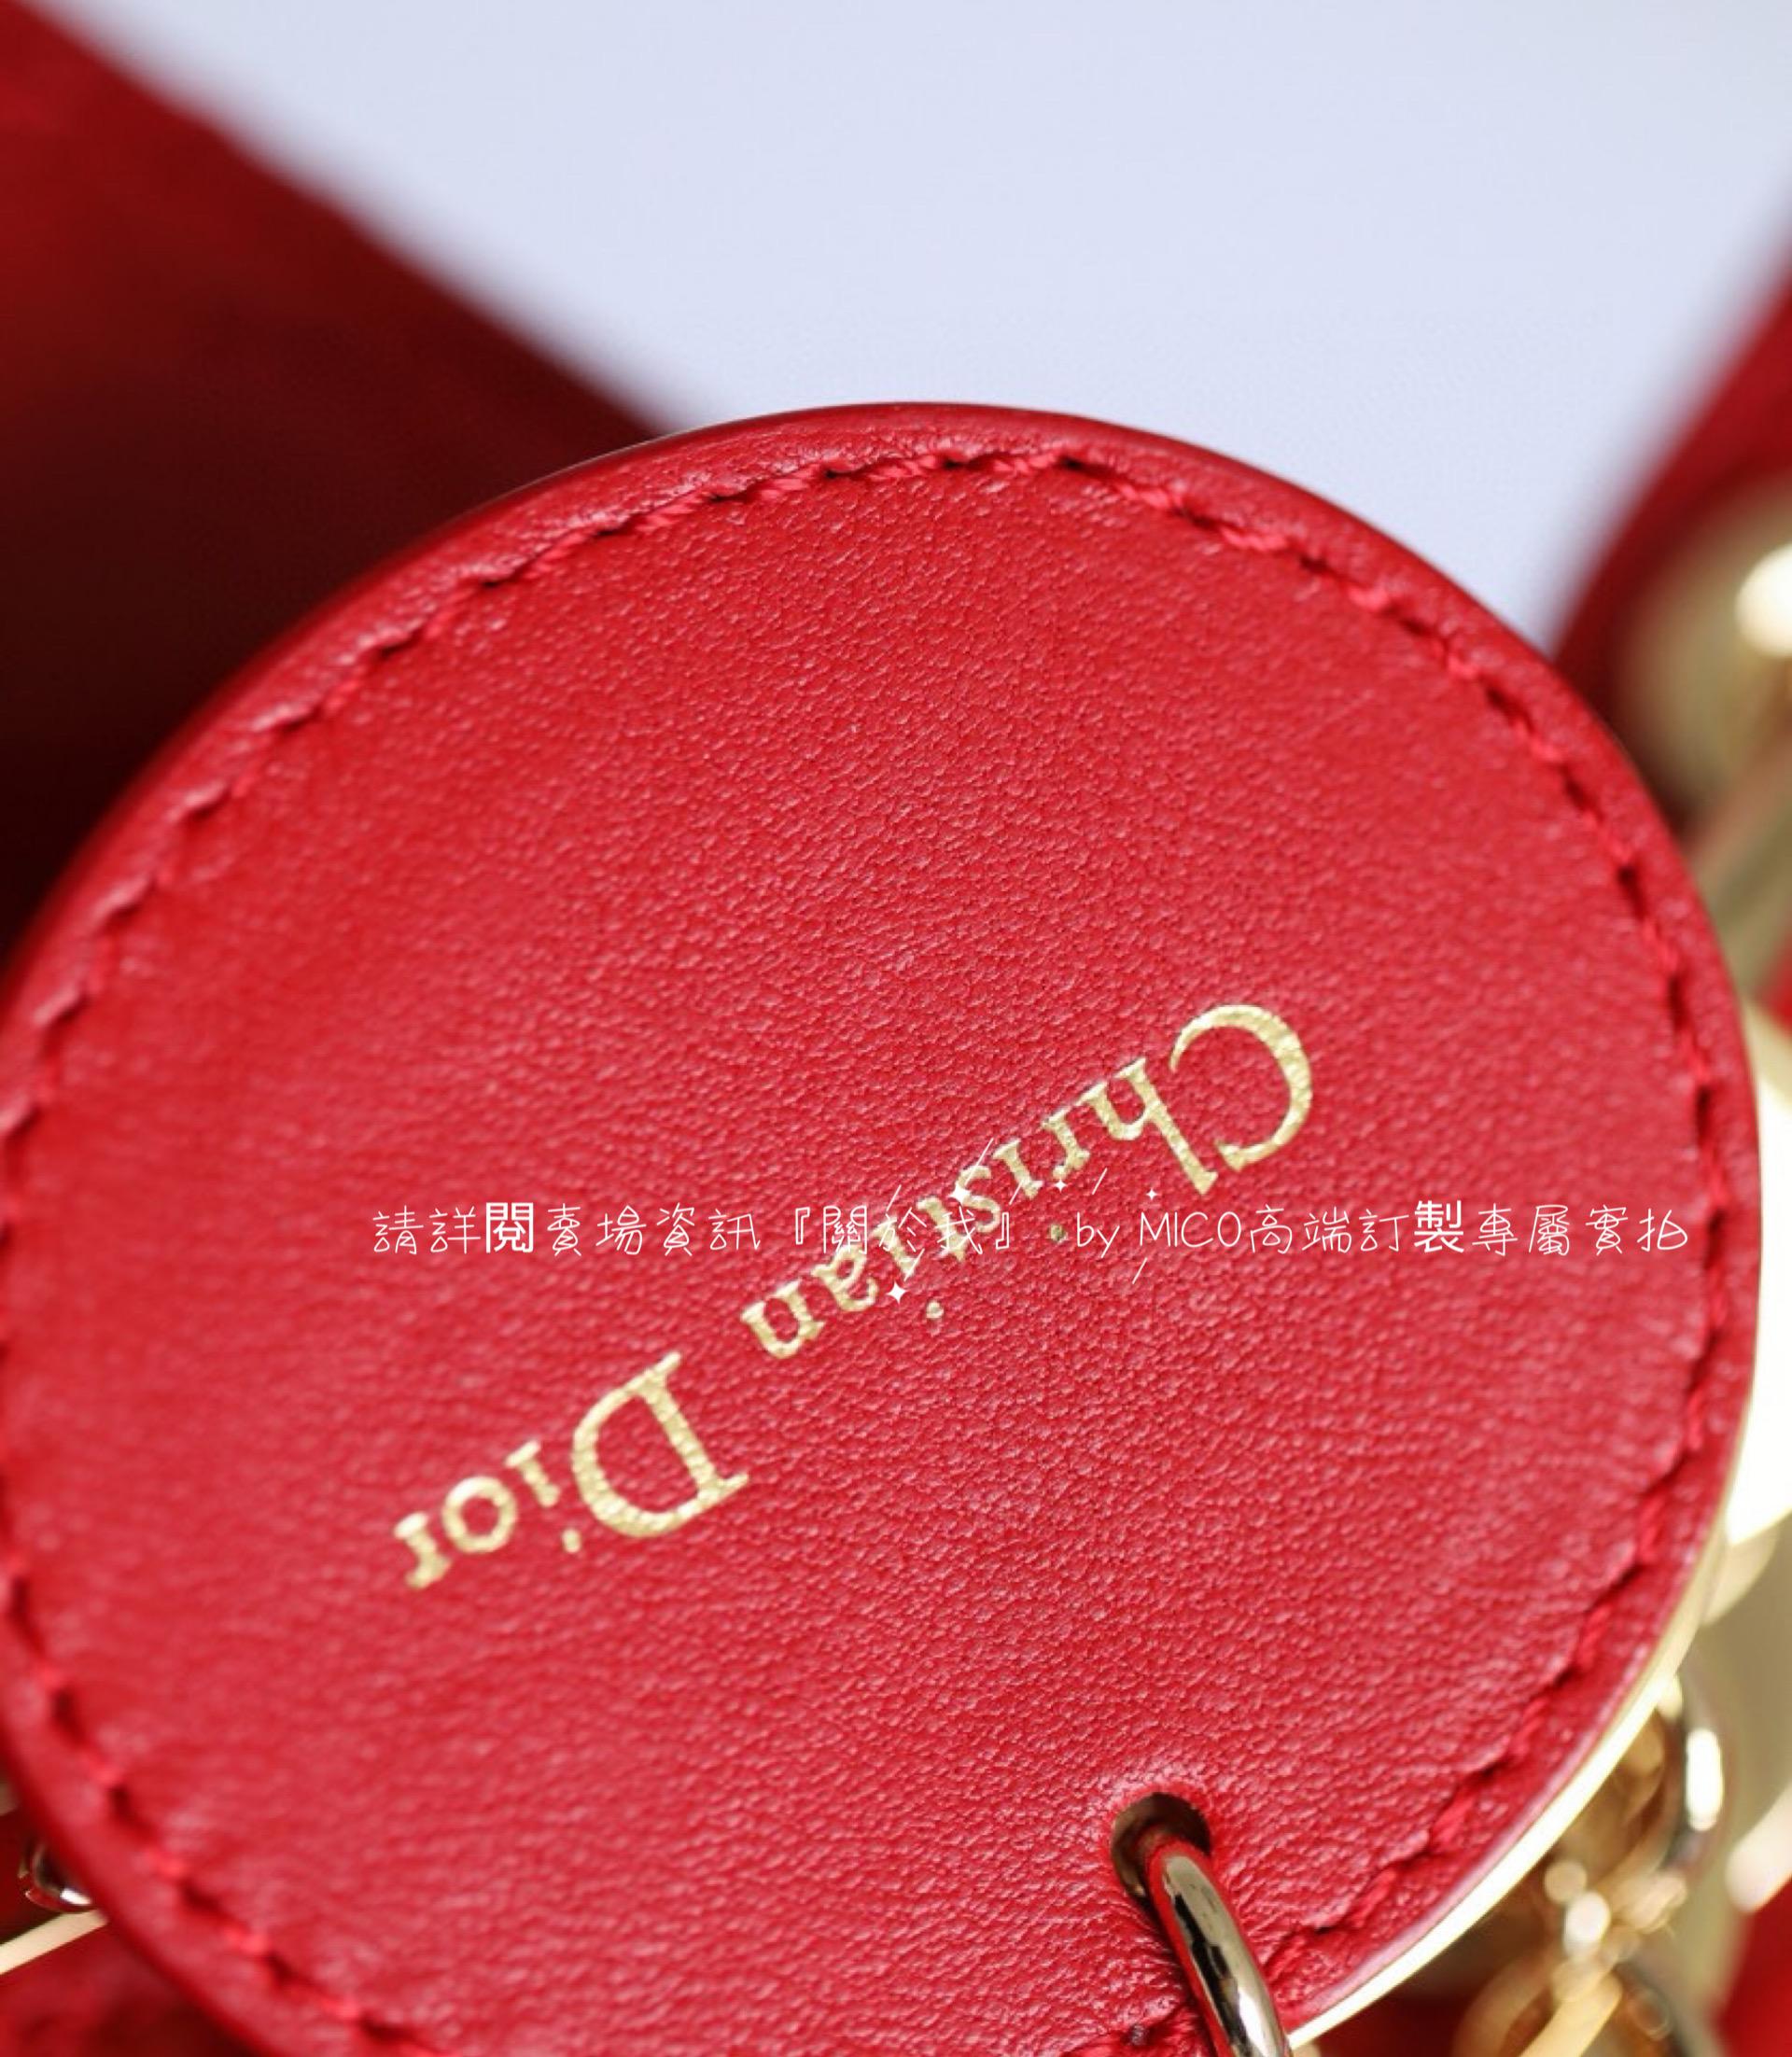 DIOR 愛心藤格紋/羊皮/紅色/金釦 Lady Dior My ABCDior 手袋 Dioramour 限定系列 20cm